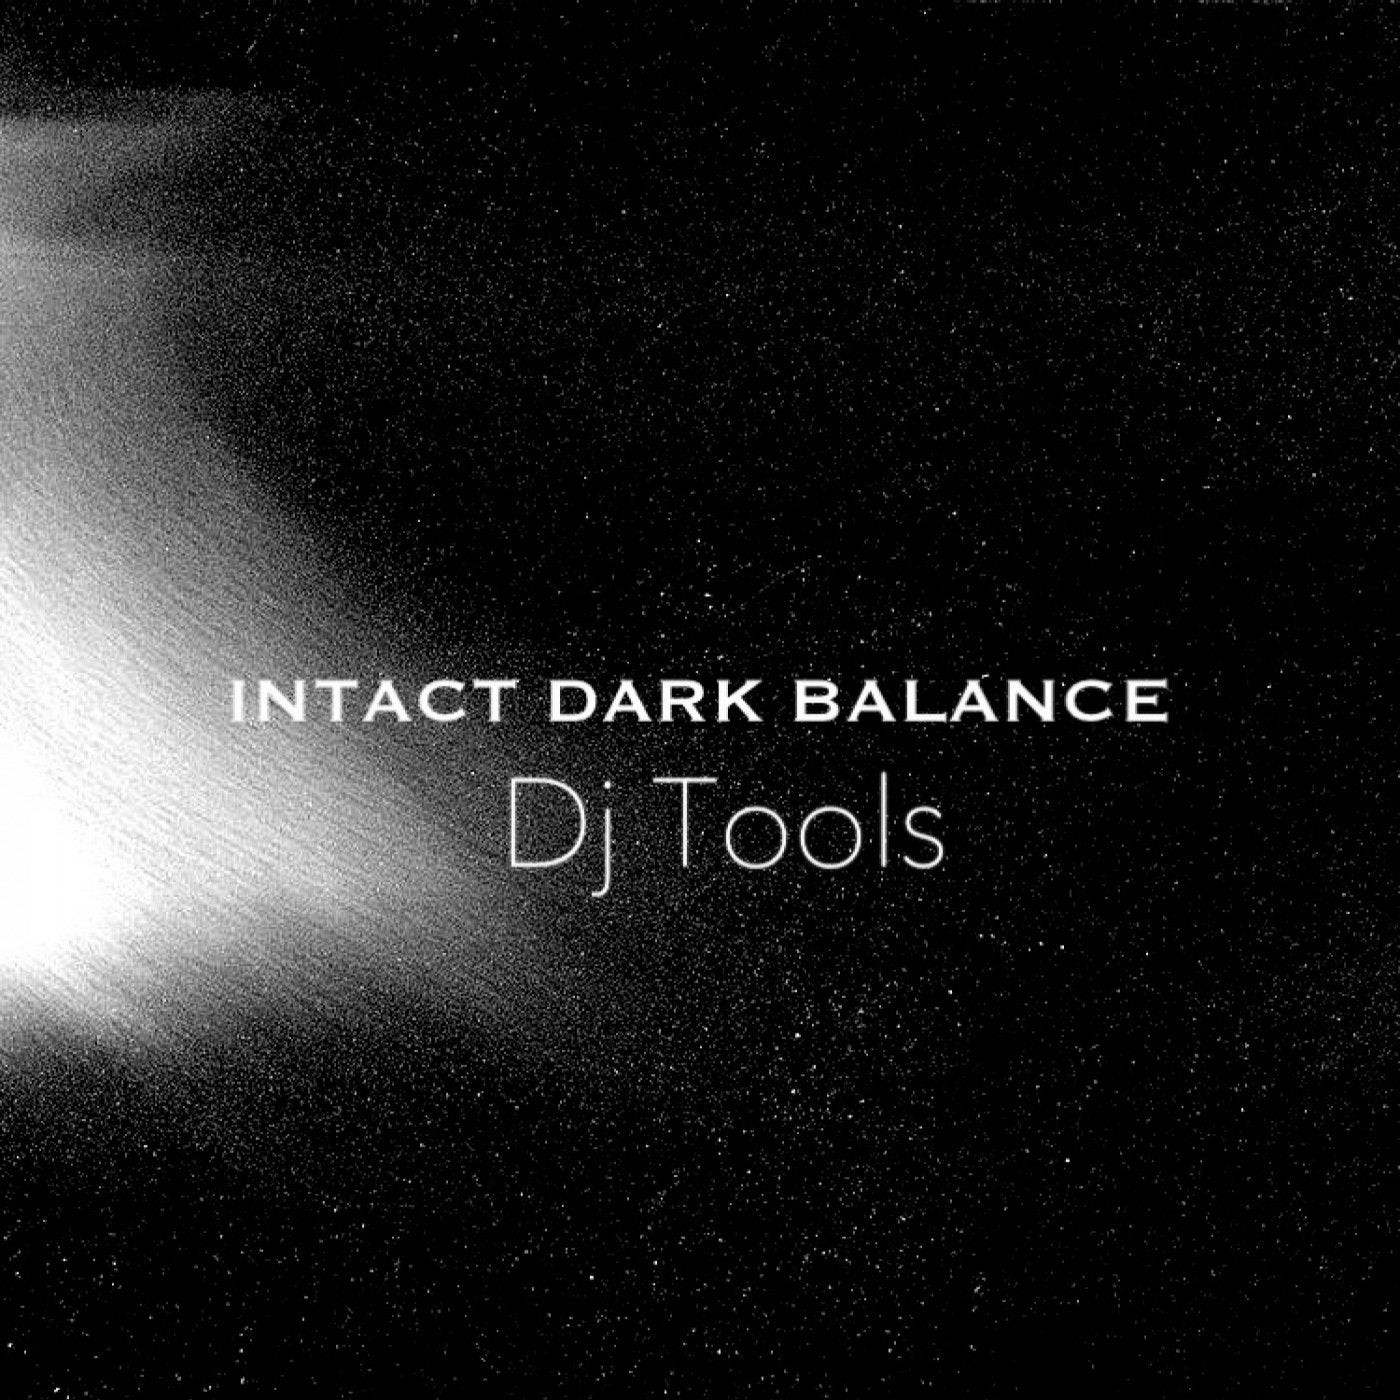 Intact Dark Balance [Dj Tools]